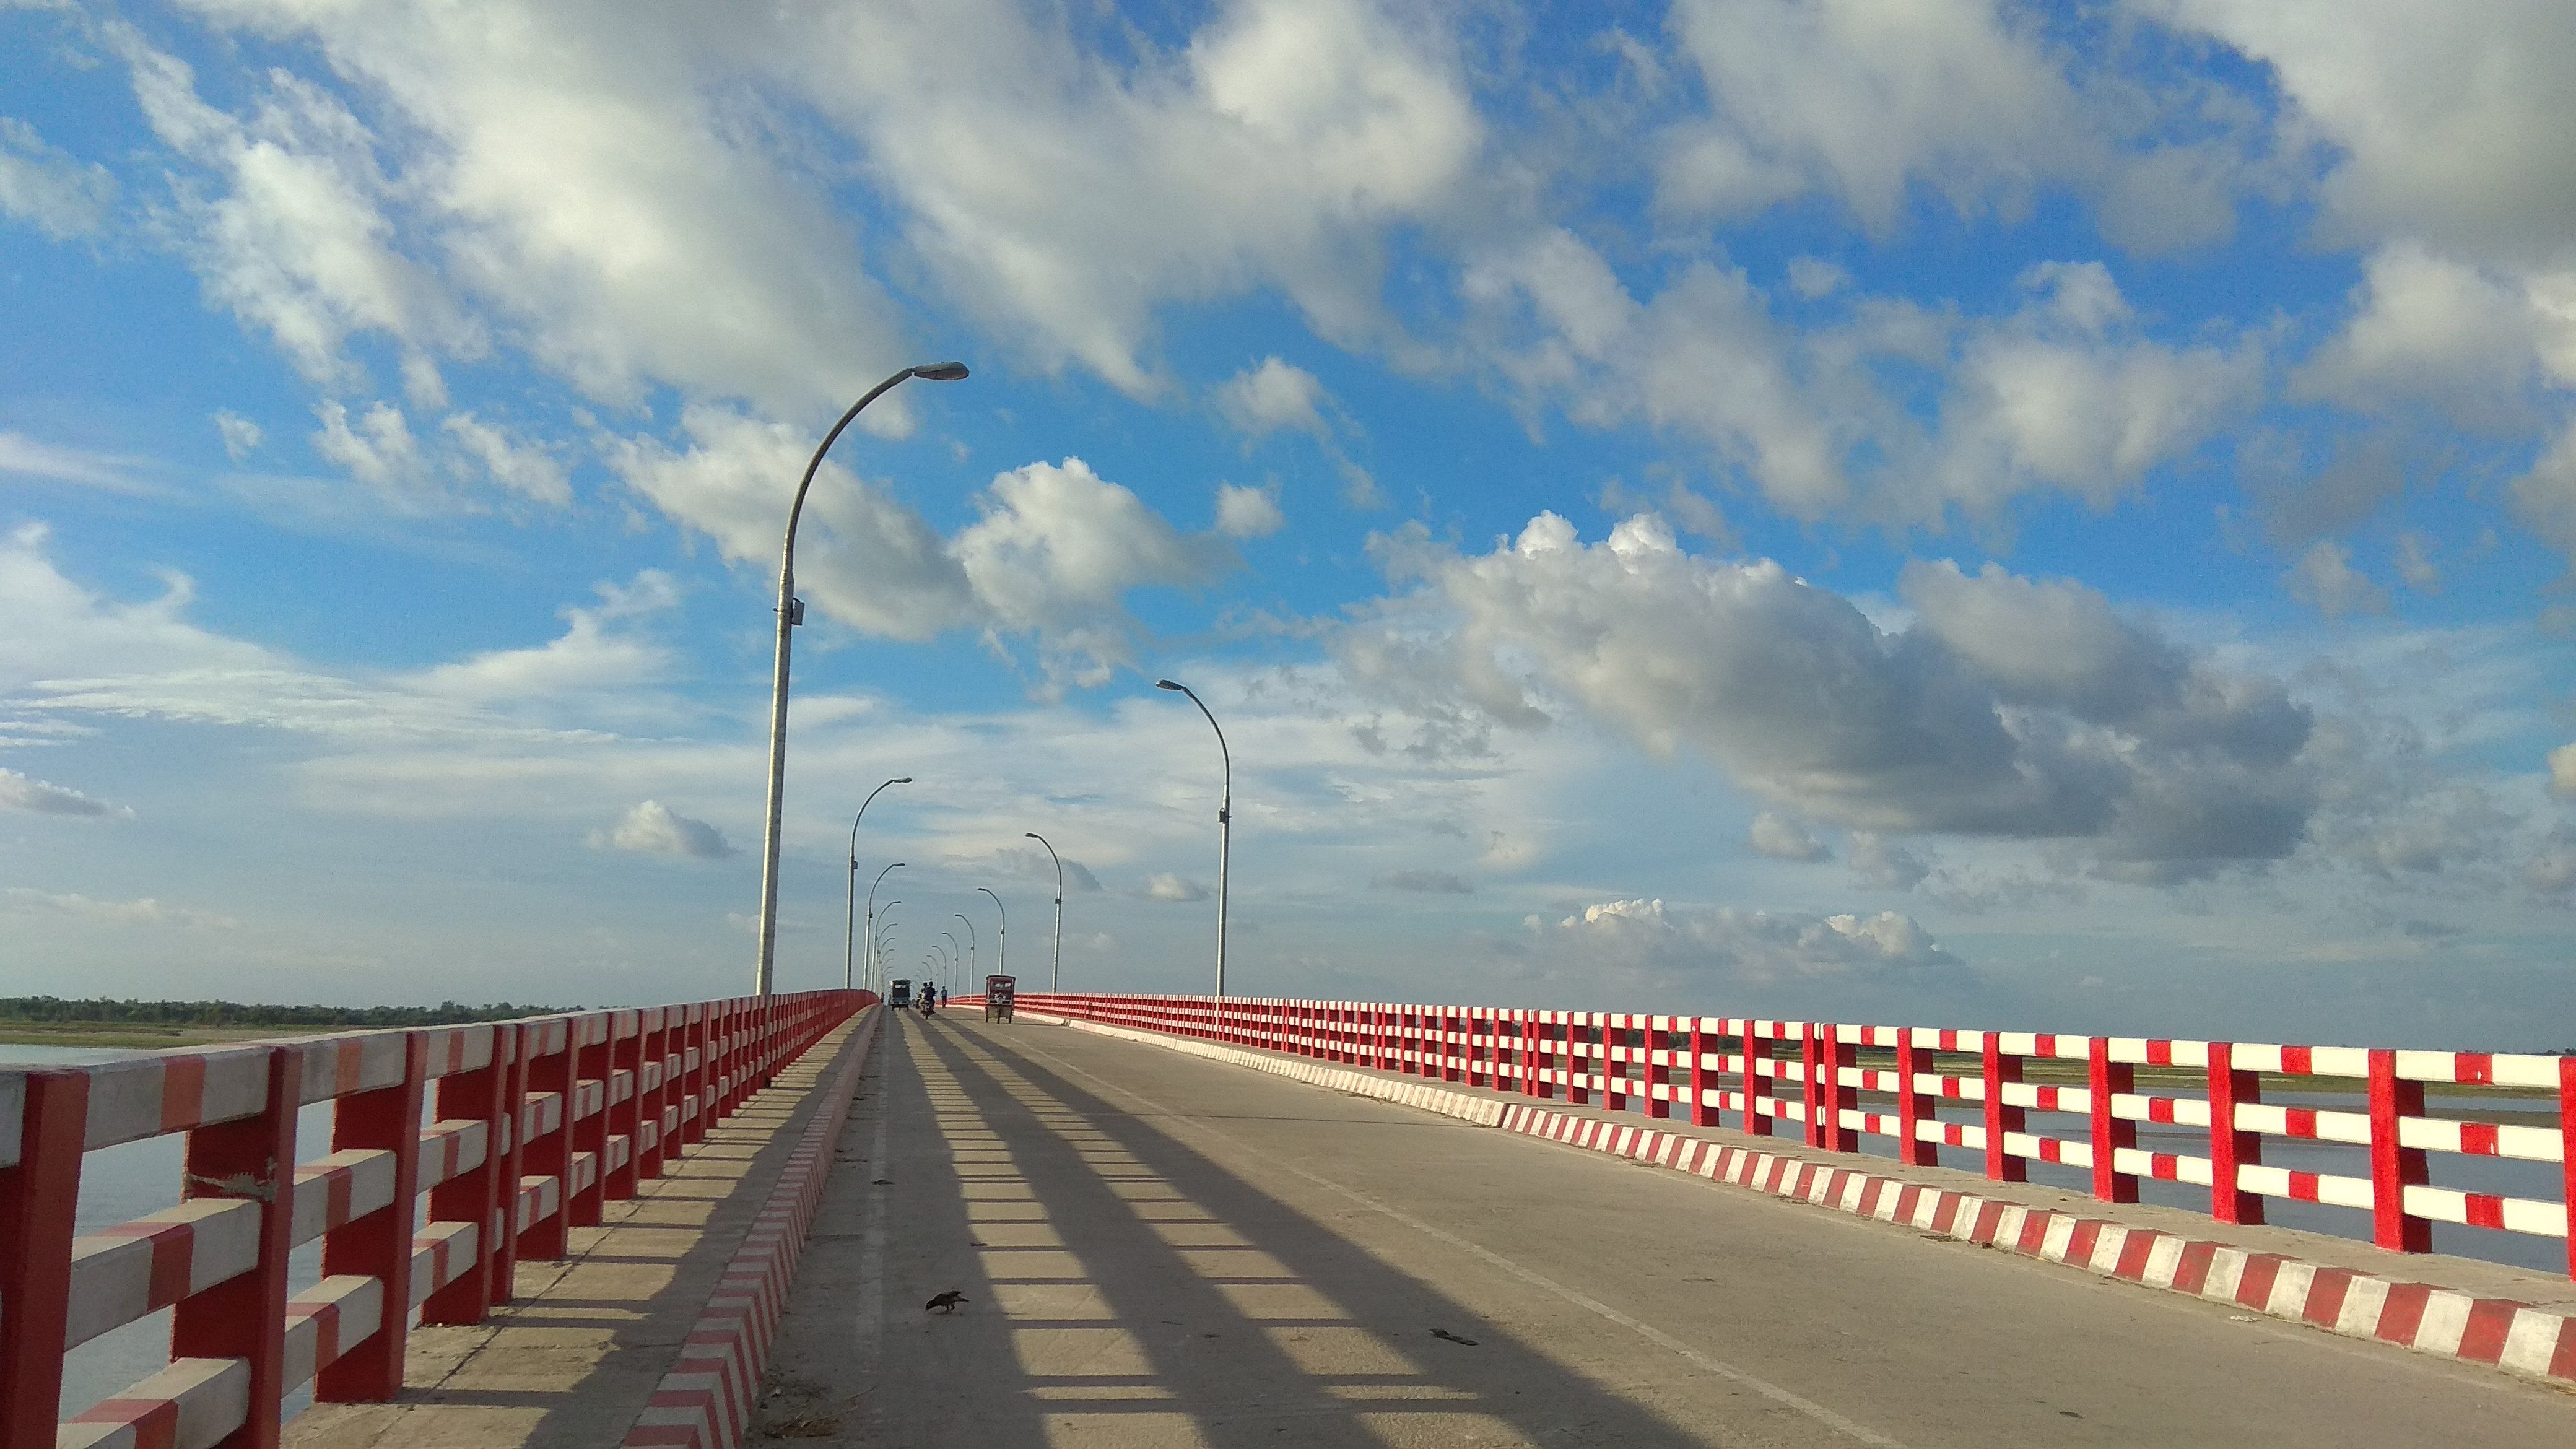 Tista Bridge